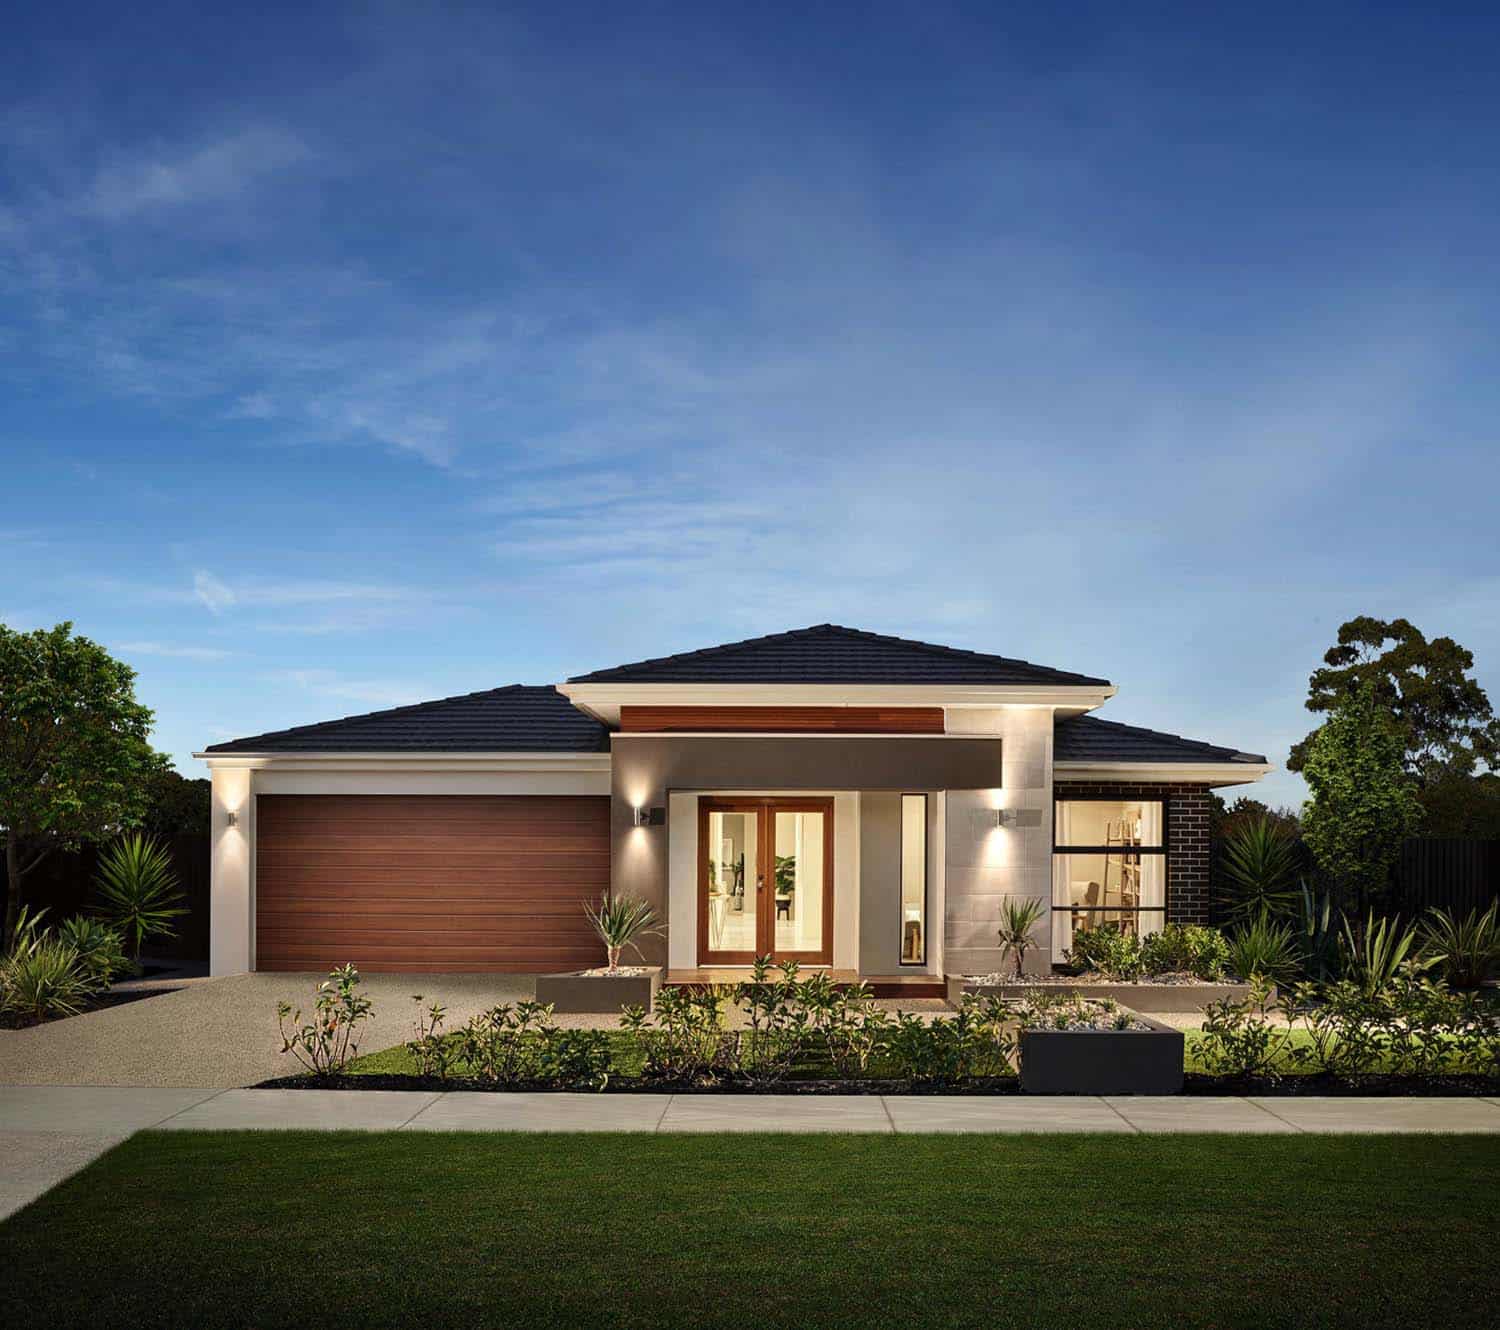 Elegant Model Home In Australia Offers